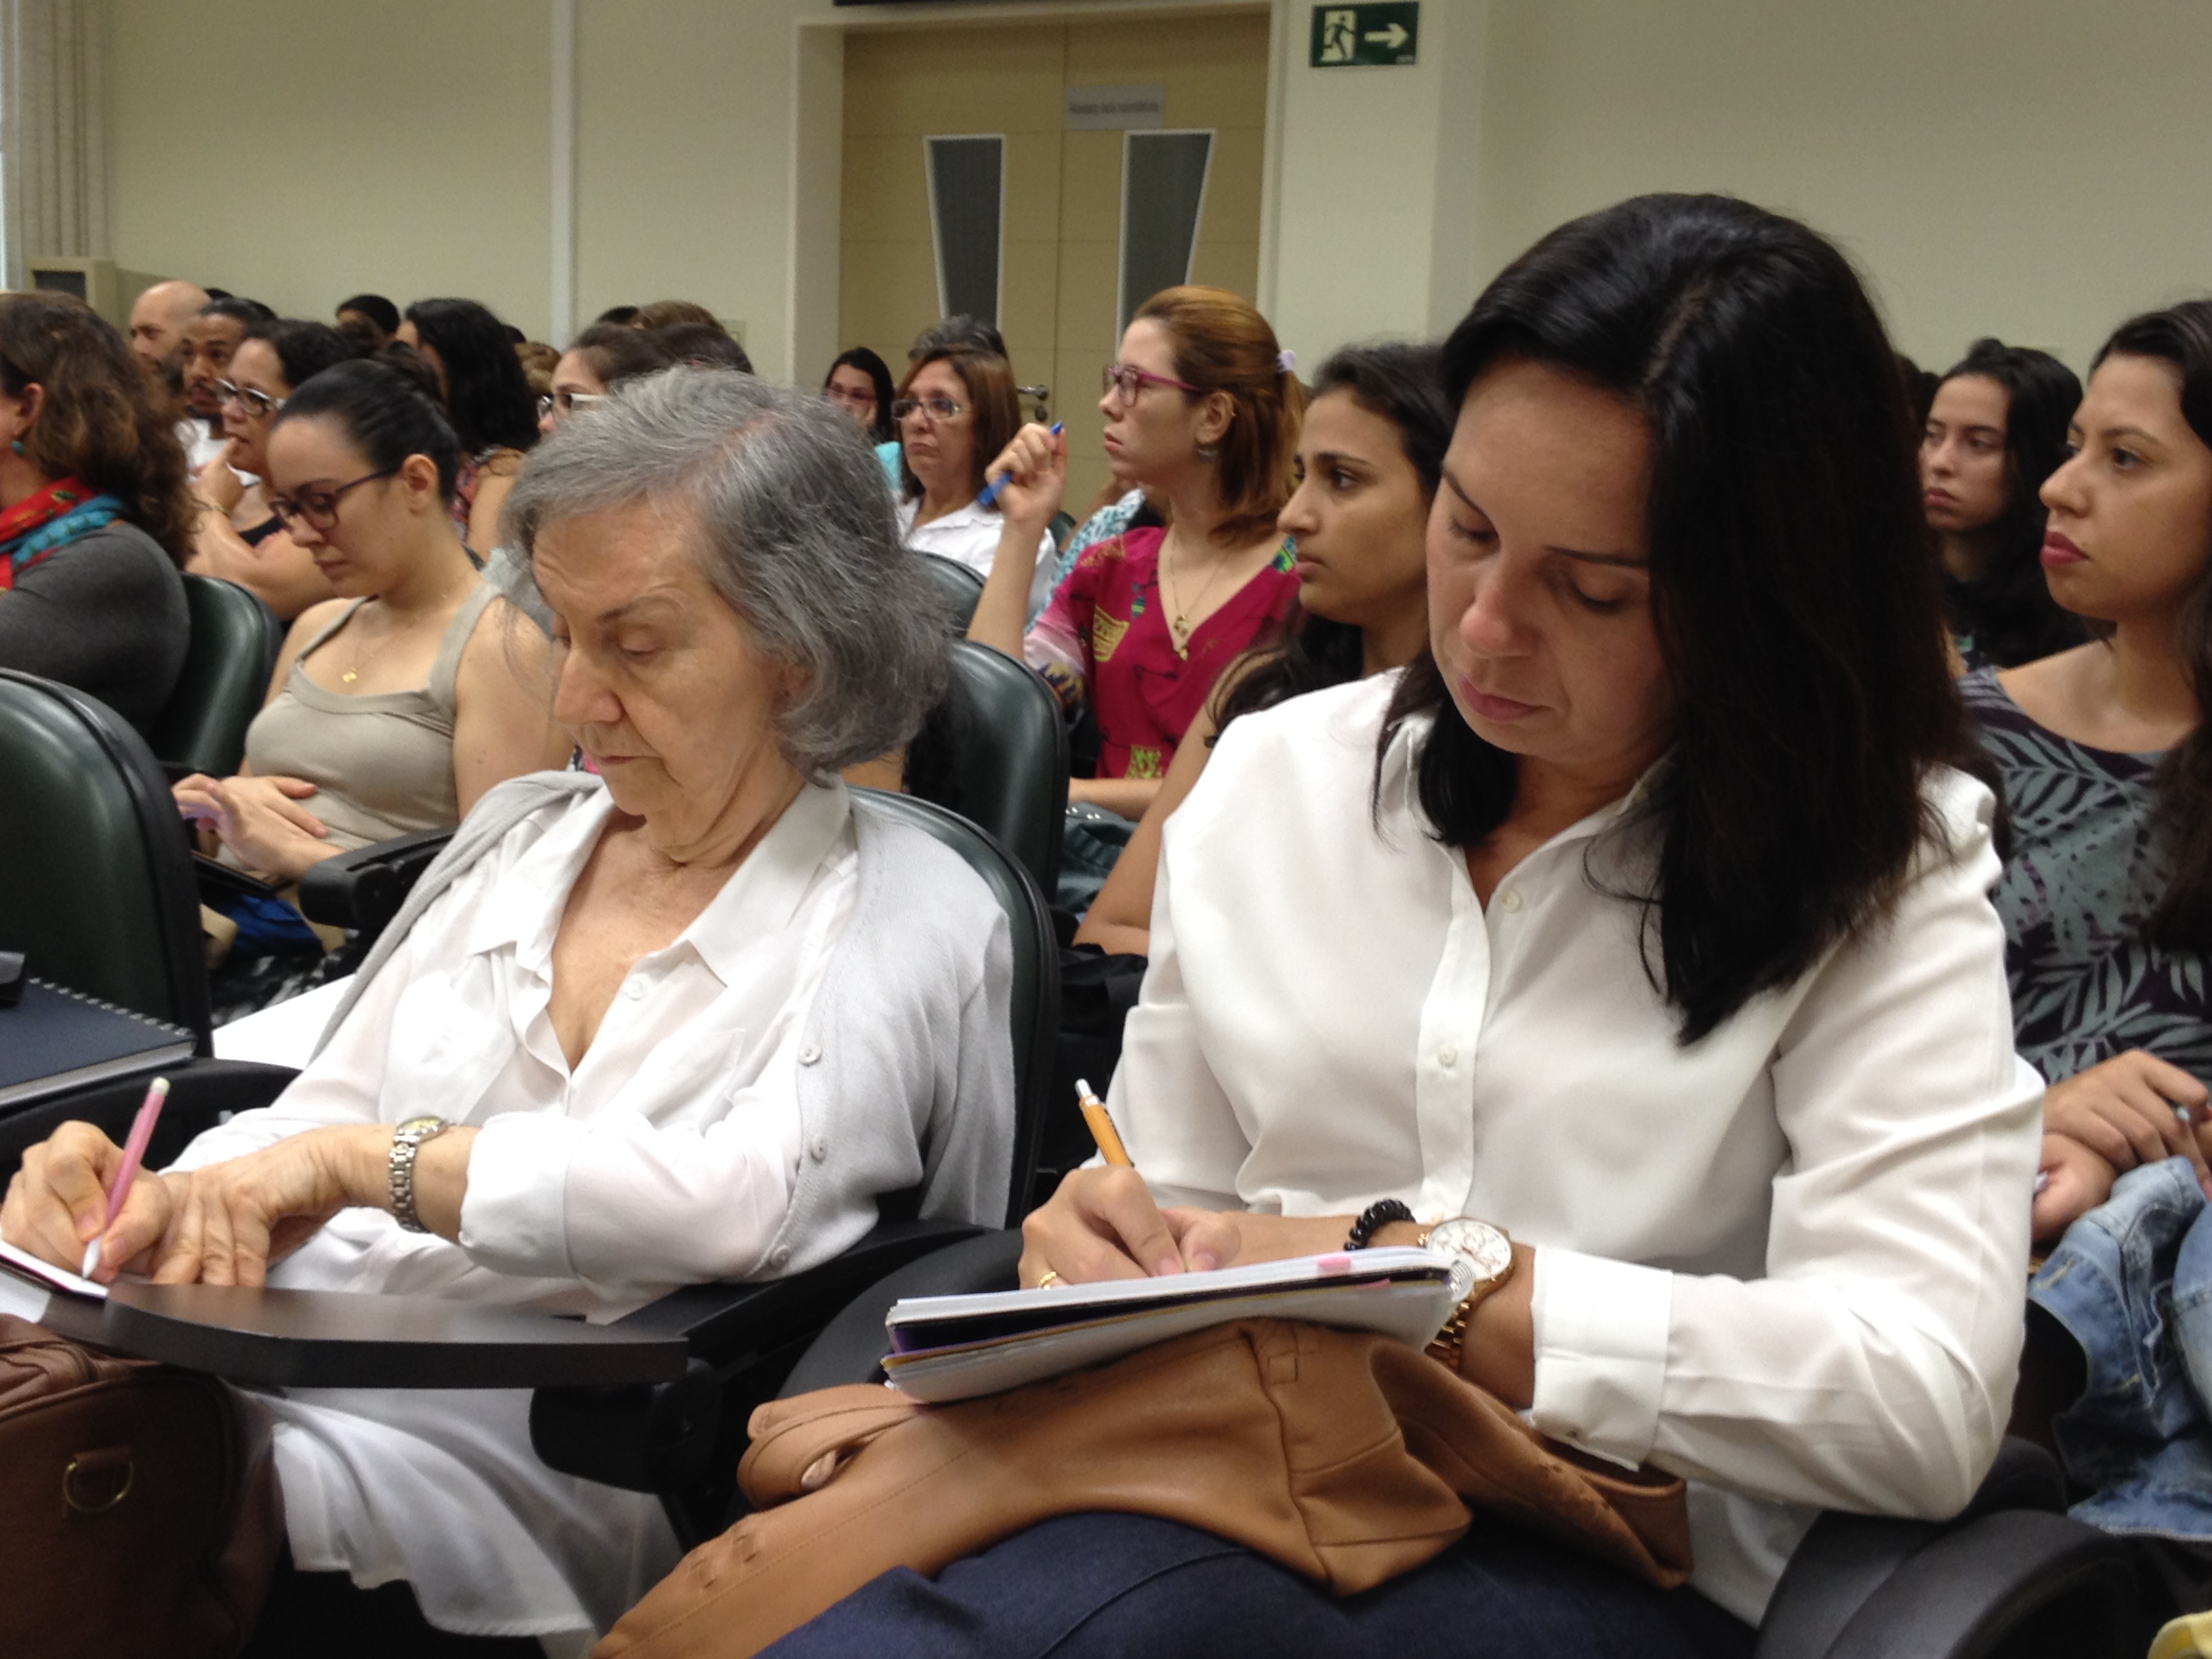 A Profa. Dra. Edna Marturano (FMRP-USP), uma das palestrantes, e a Profa. Dra. Luciana Carla dos Santos Elias, coordenadora do LAPEES (FFCLRP-USP), acompanham um dos momentos de apresentações no Seminário